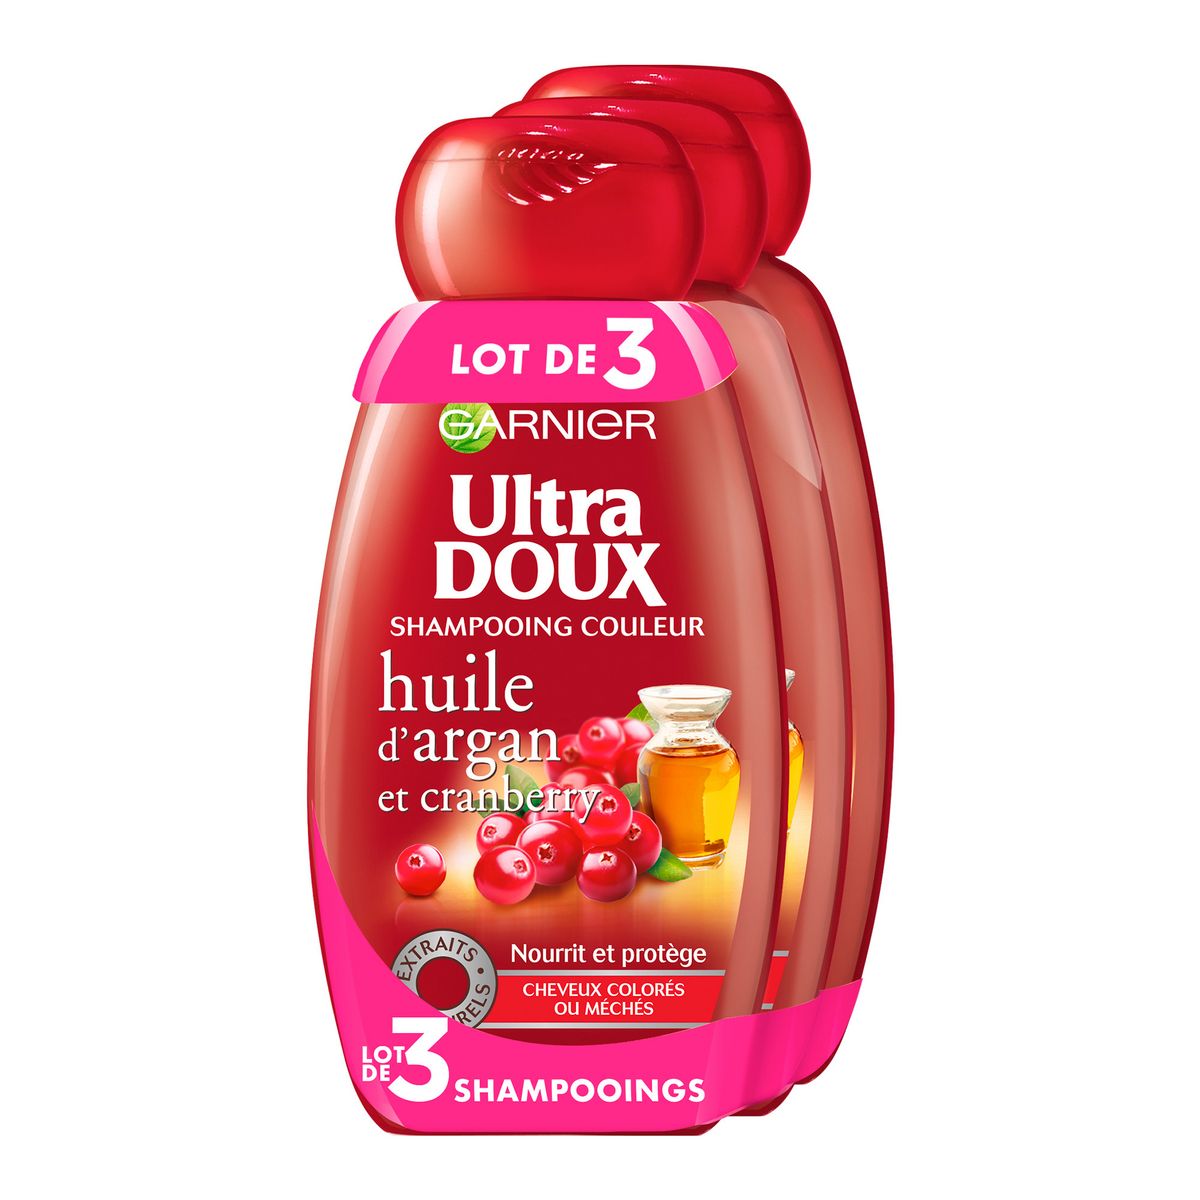 ULTRA DOUX Shampooing couleur huile d'argan et cranberry cheveux colorés ou méchés 3x250ml